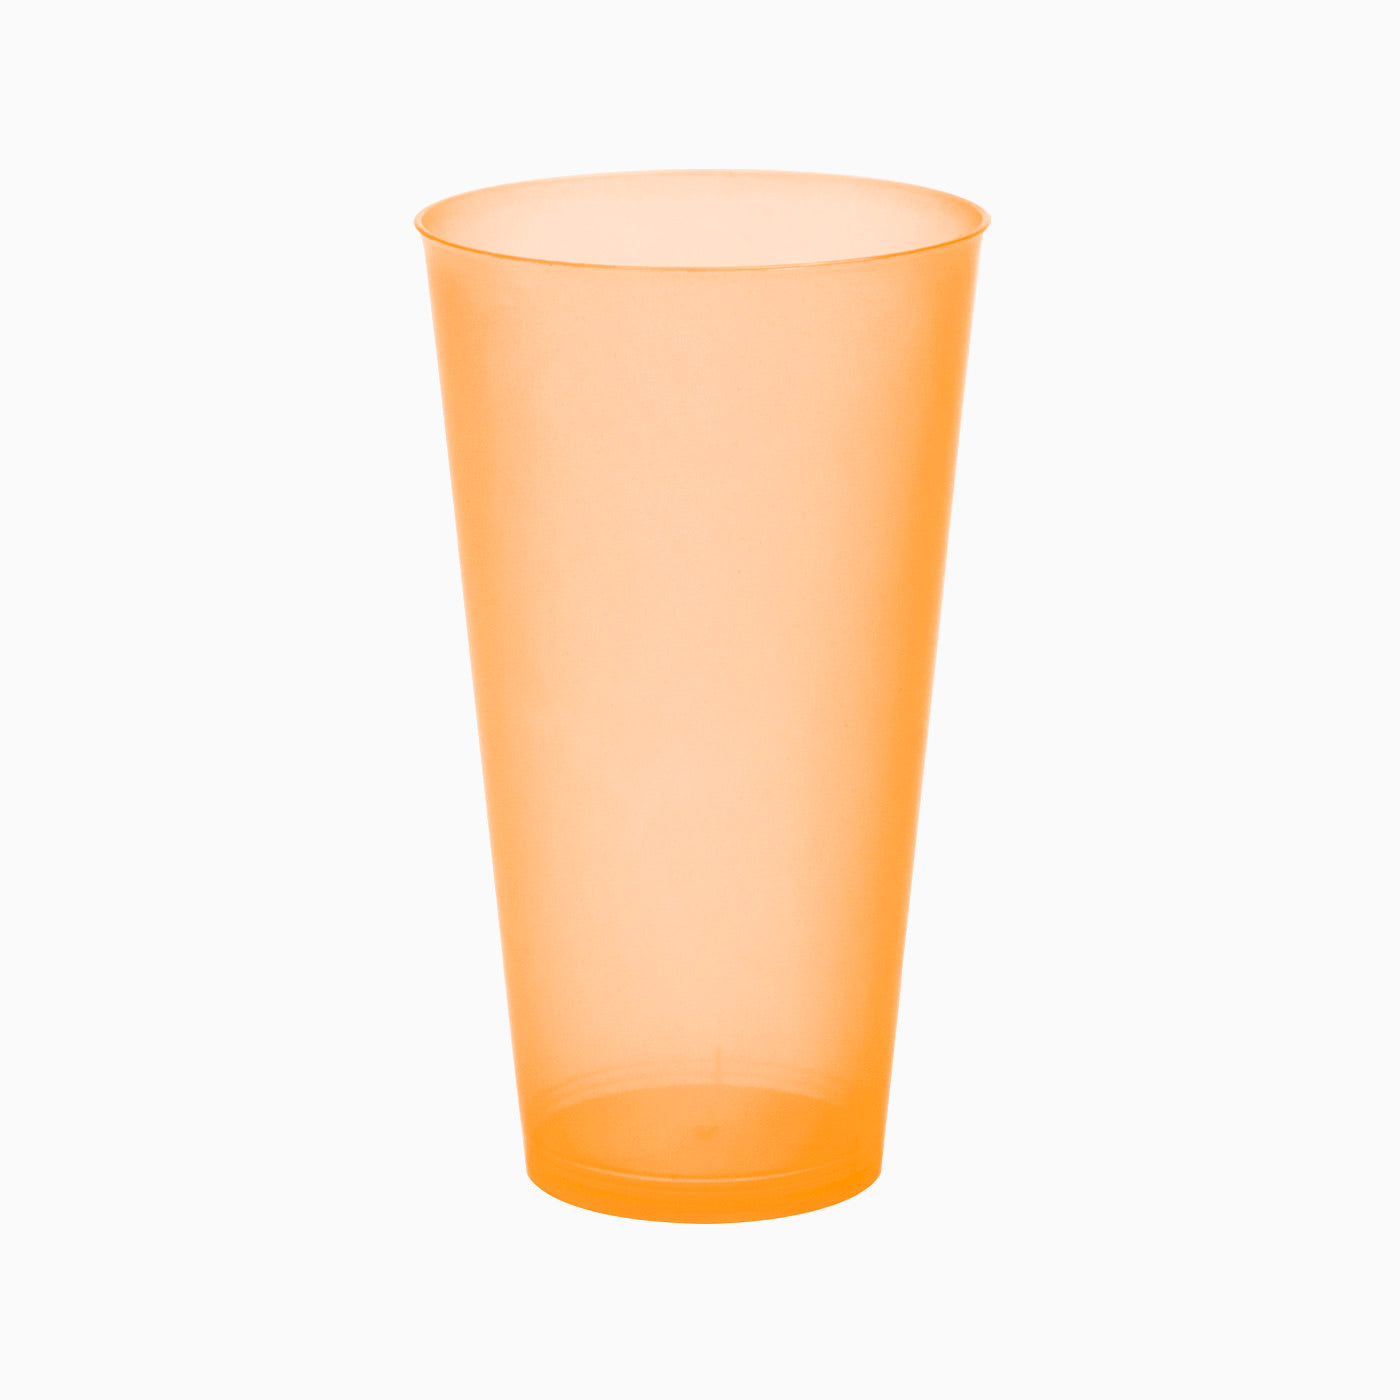 Bicchiere da cocktail arancione fluo / Confezione da 4 unità